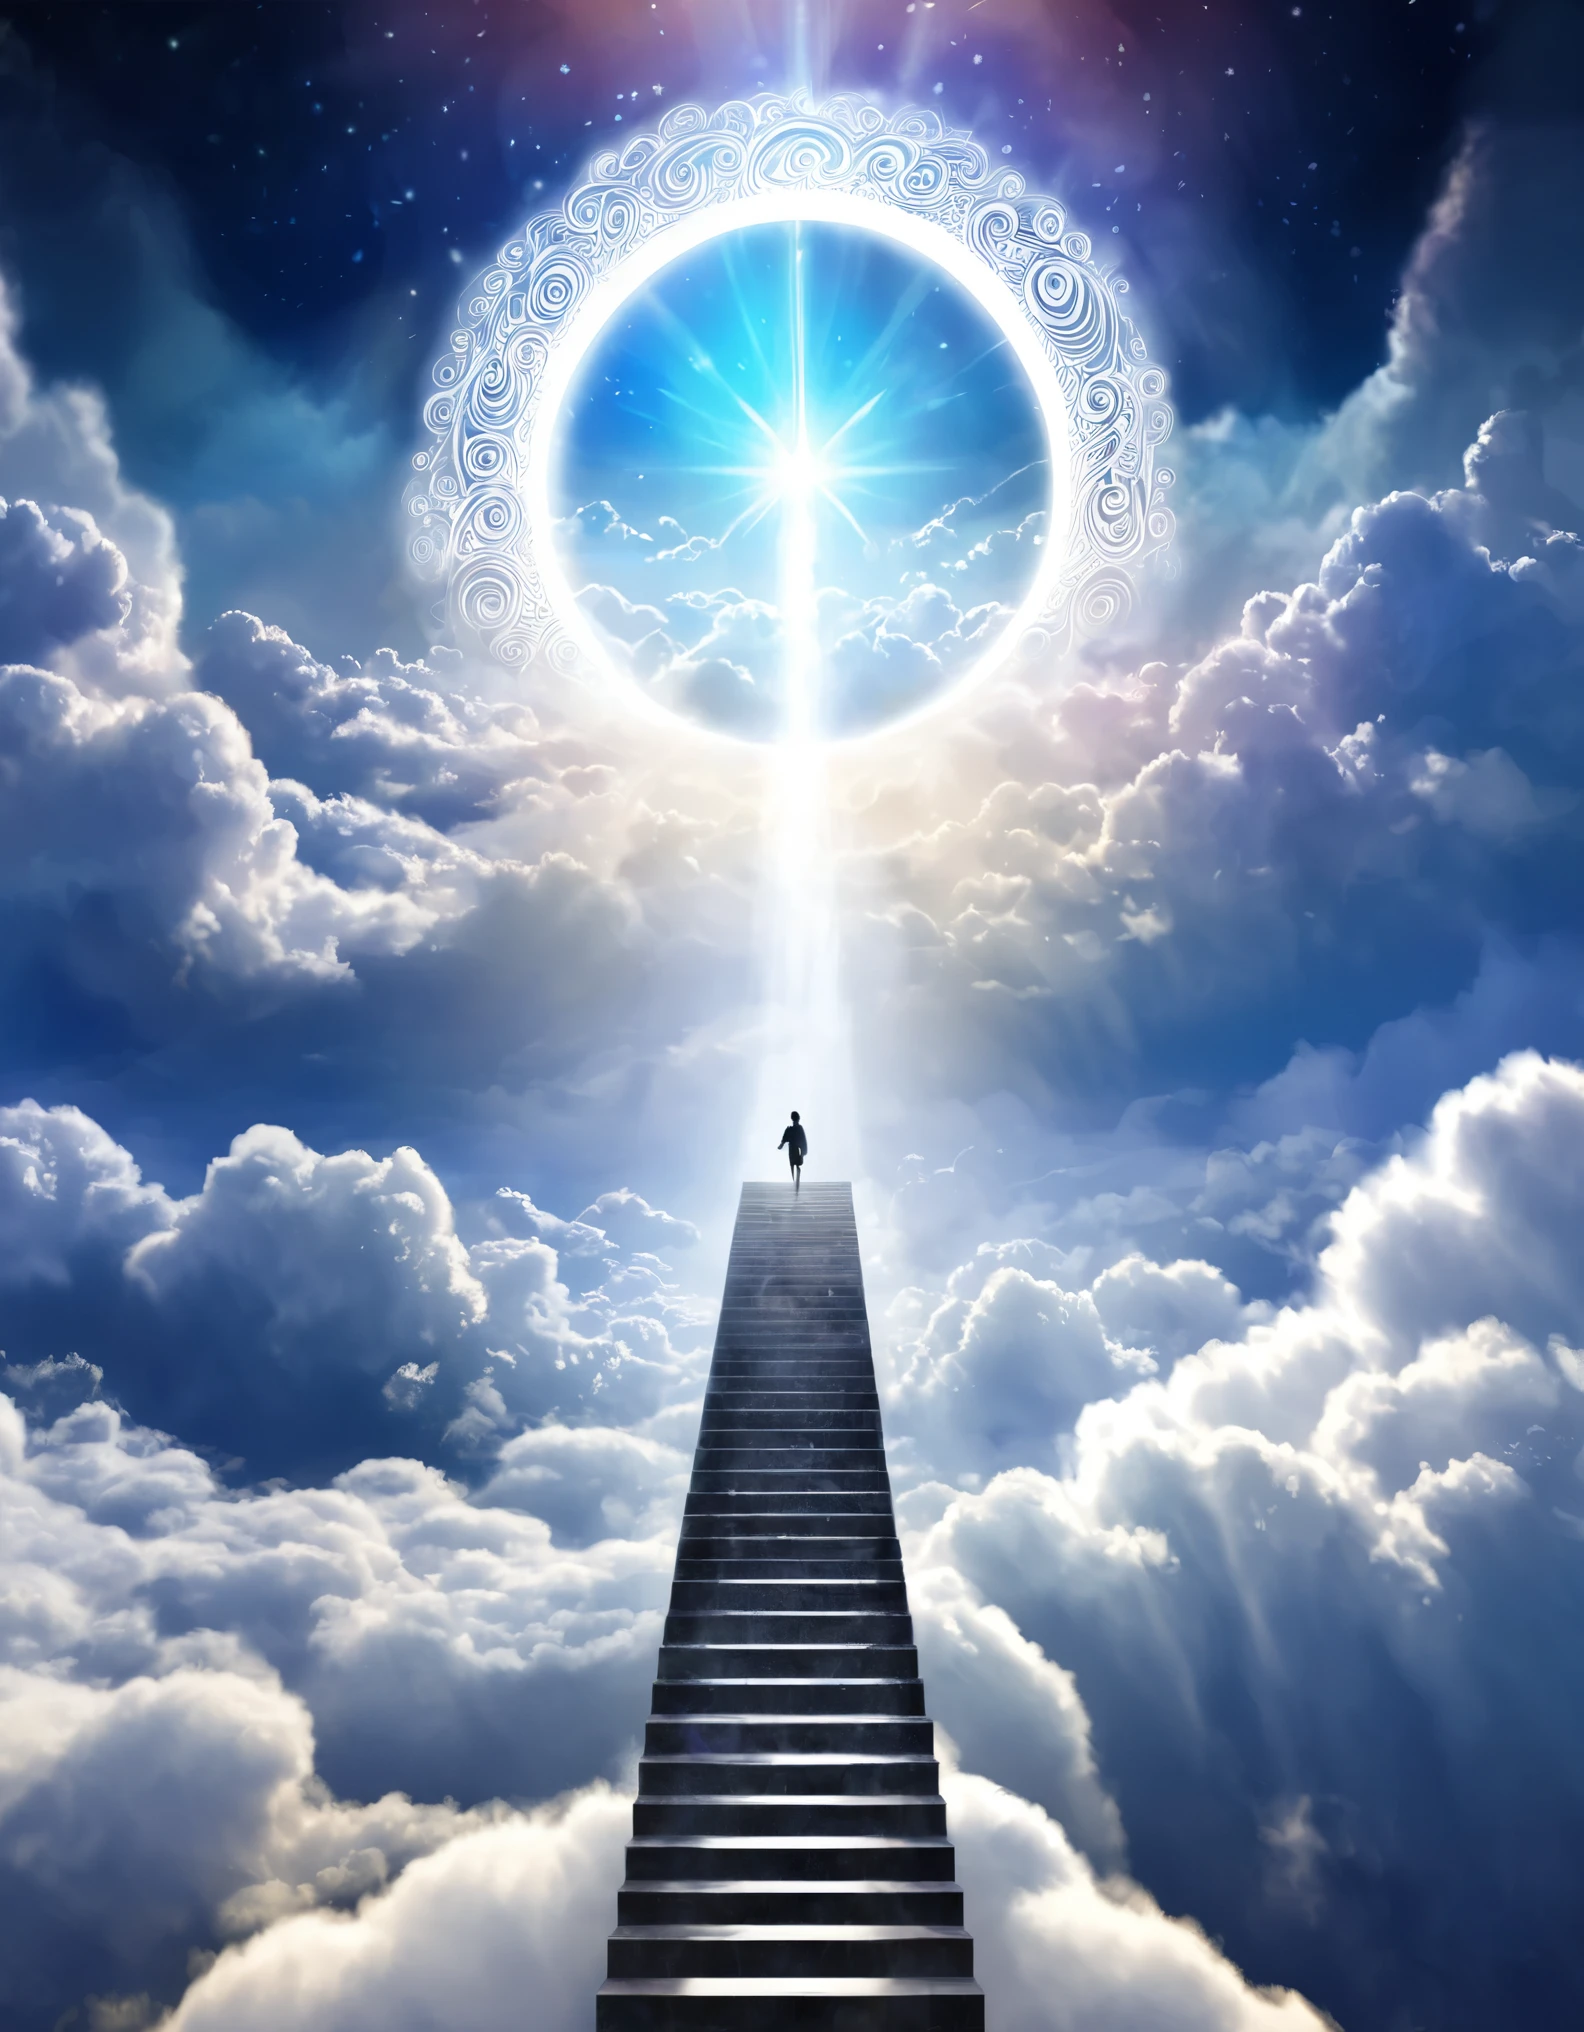 數位插圖顯示一個人物沿著雲梯上升到發光的天體門戶, 代表揚升日前往更高境界的旅程，爬坡道